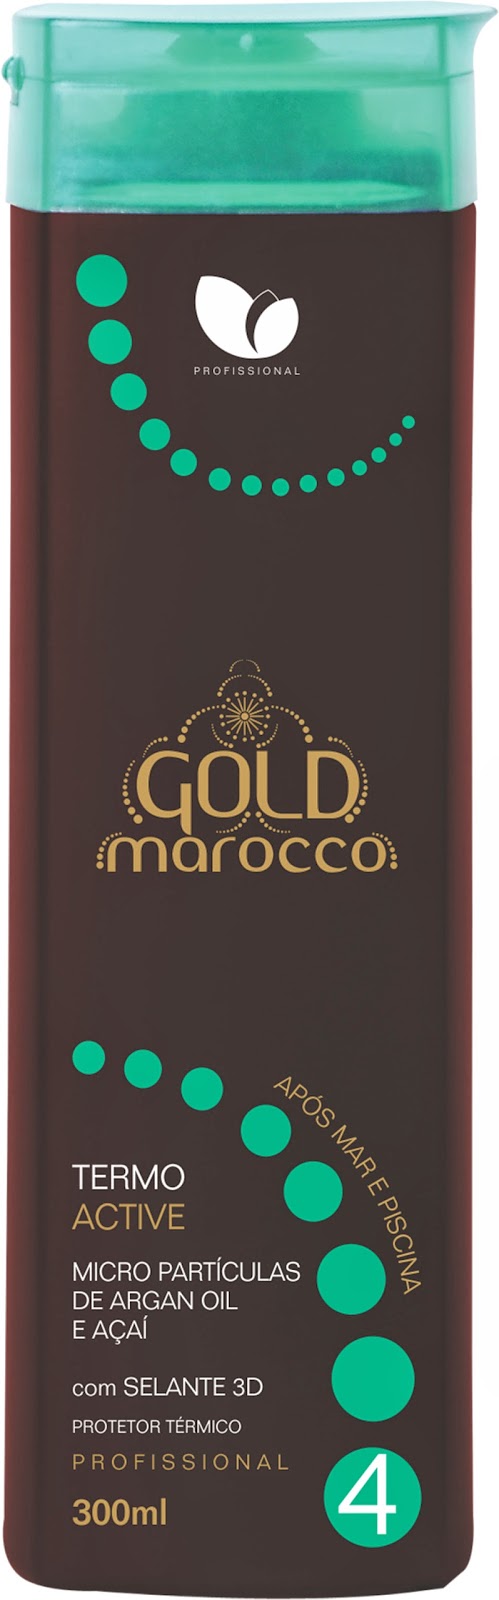 Termo Active Gold Marroco Manga Rosa